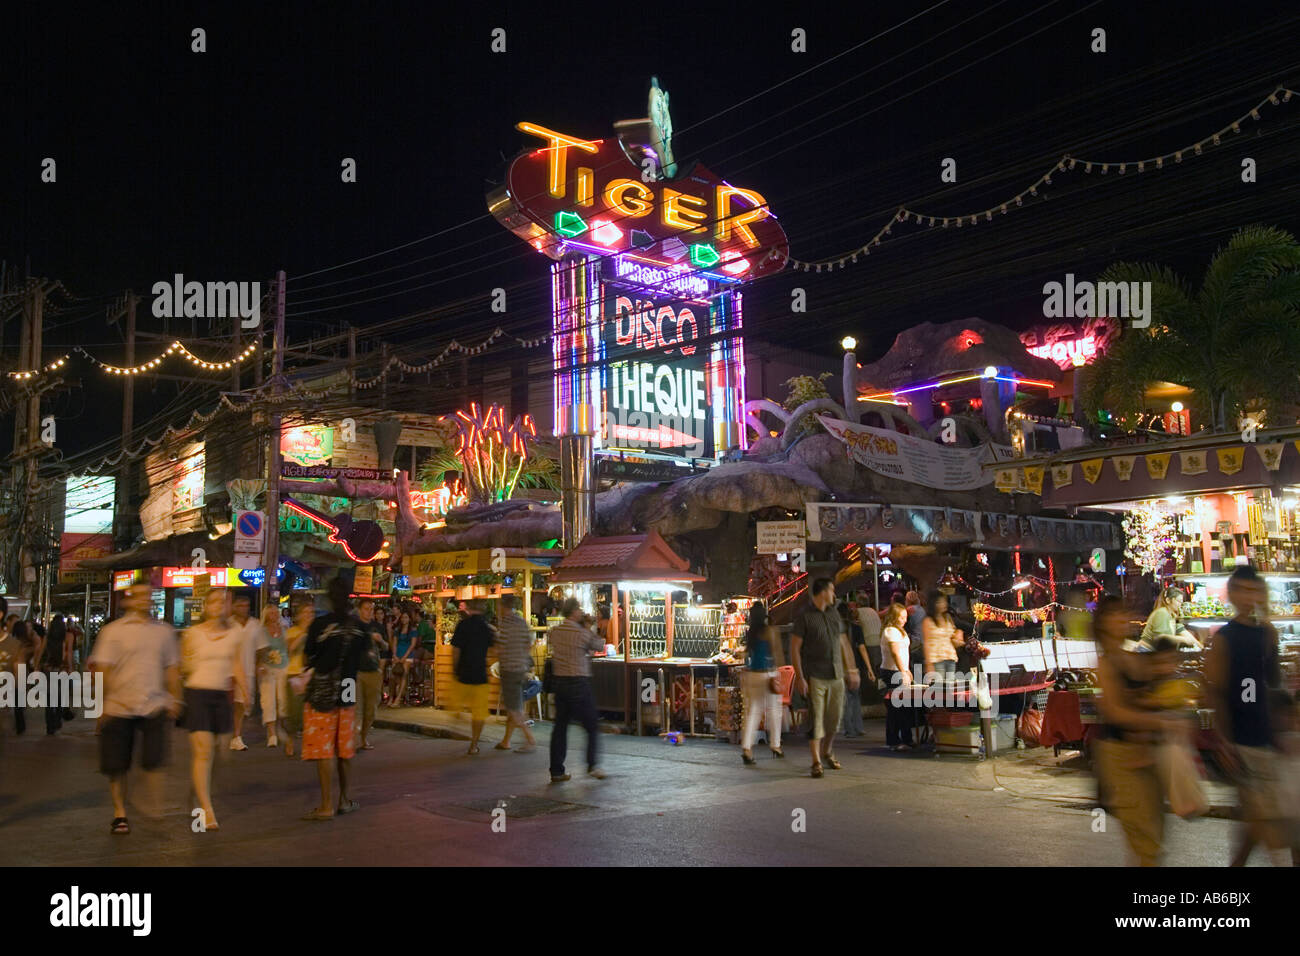 Notte tempo per passeggiare orge beach bar negozi discoteca insegne al neon Patong Beach Thailandia Foto Stock